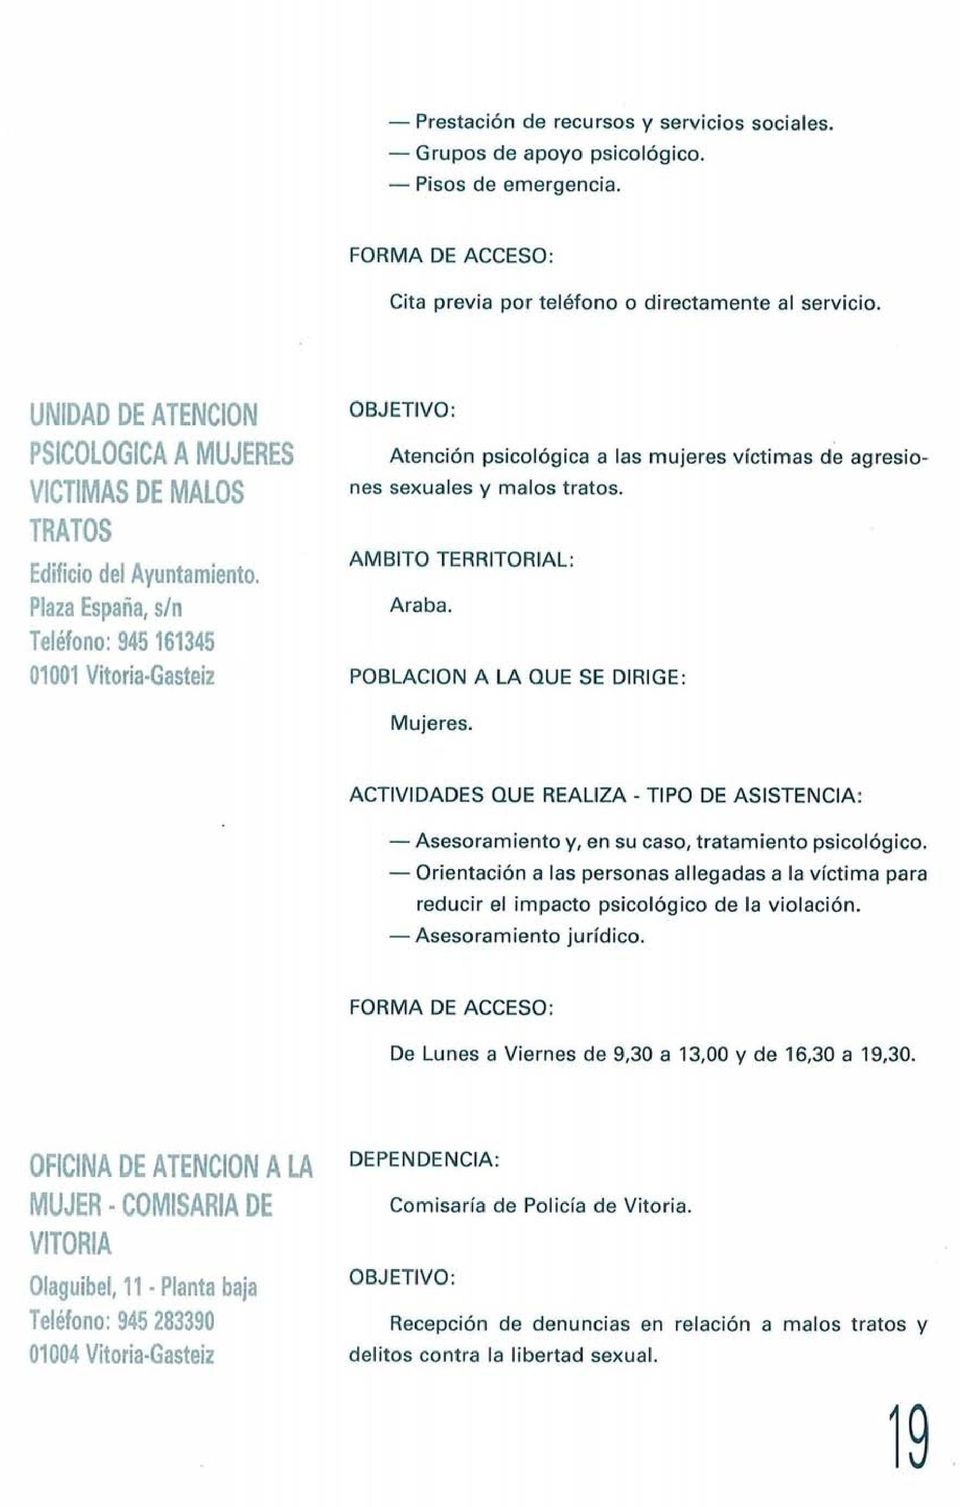 Plaza España, s/n Teléfono: 945 161345 01001 Vitoria-Gasteiz OBJETIVO: Atención psicológica a las mujeres víctimas de agresiones sexuales y malos tratos. Araba.